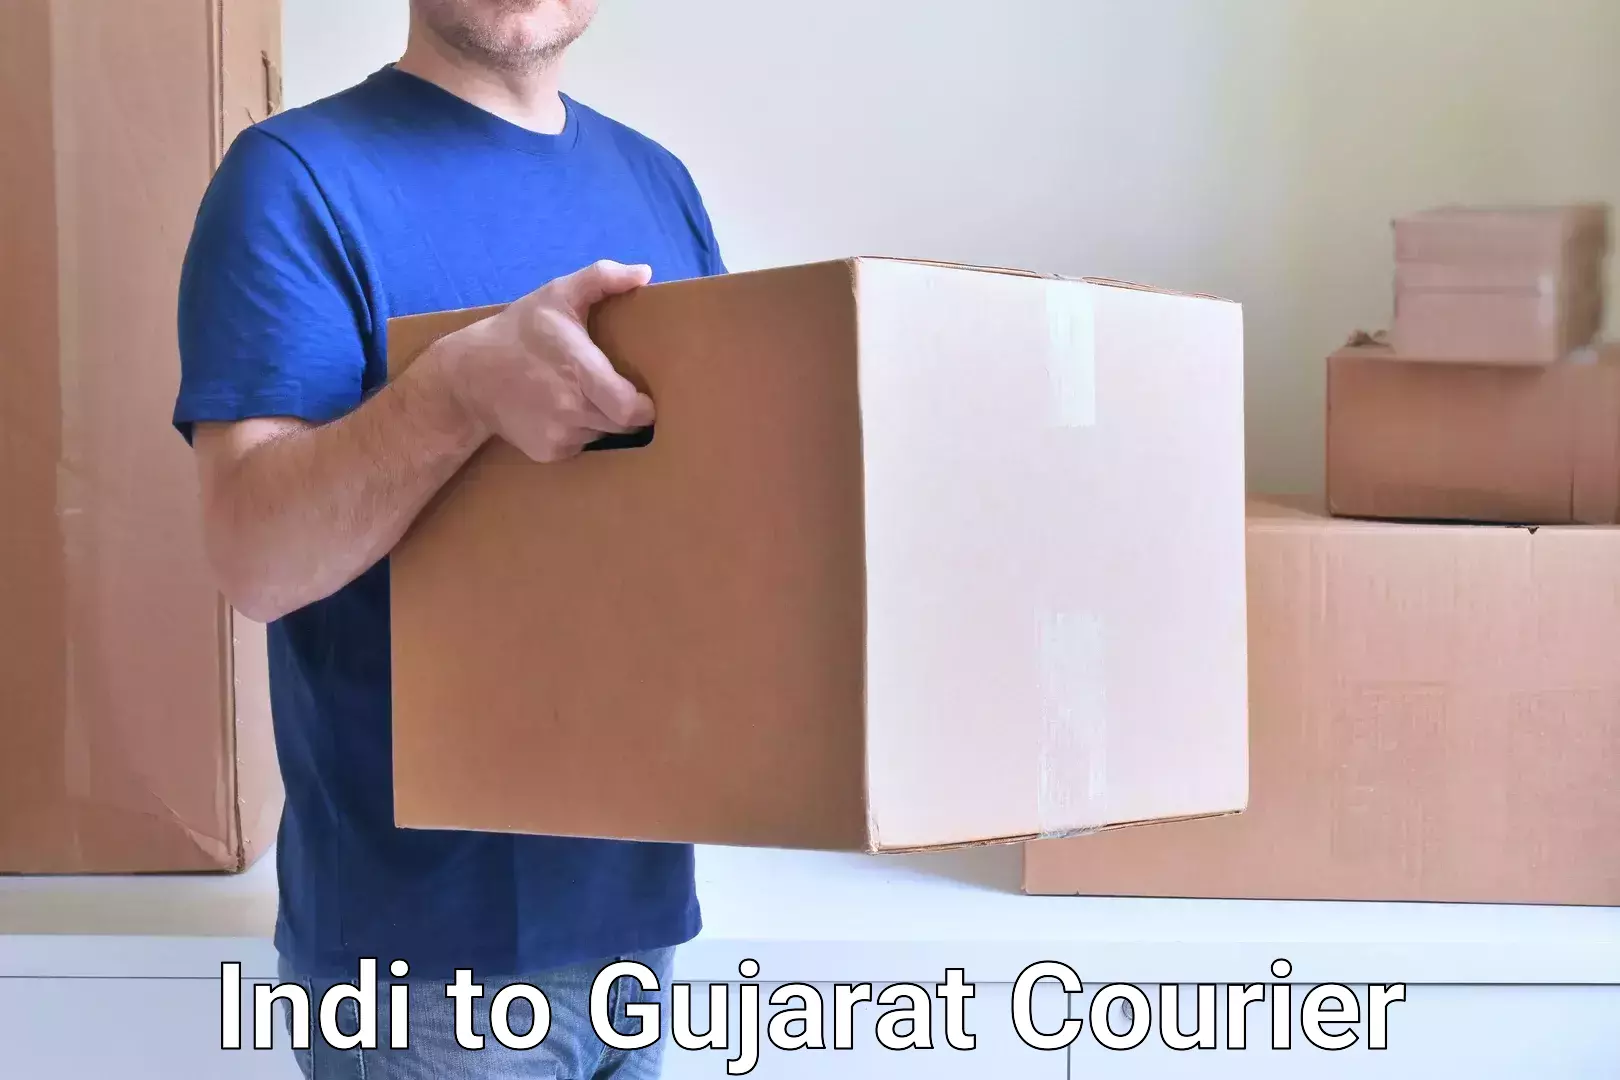 Door-to-door freight service Indi to Gujarat